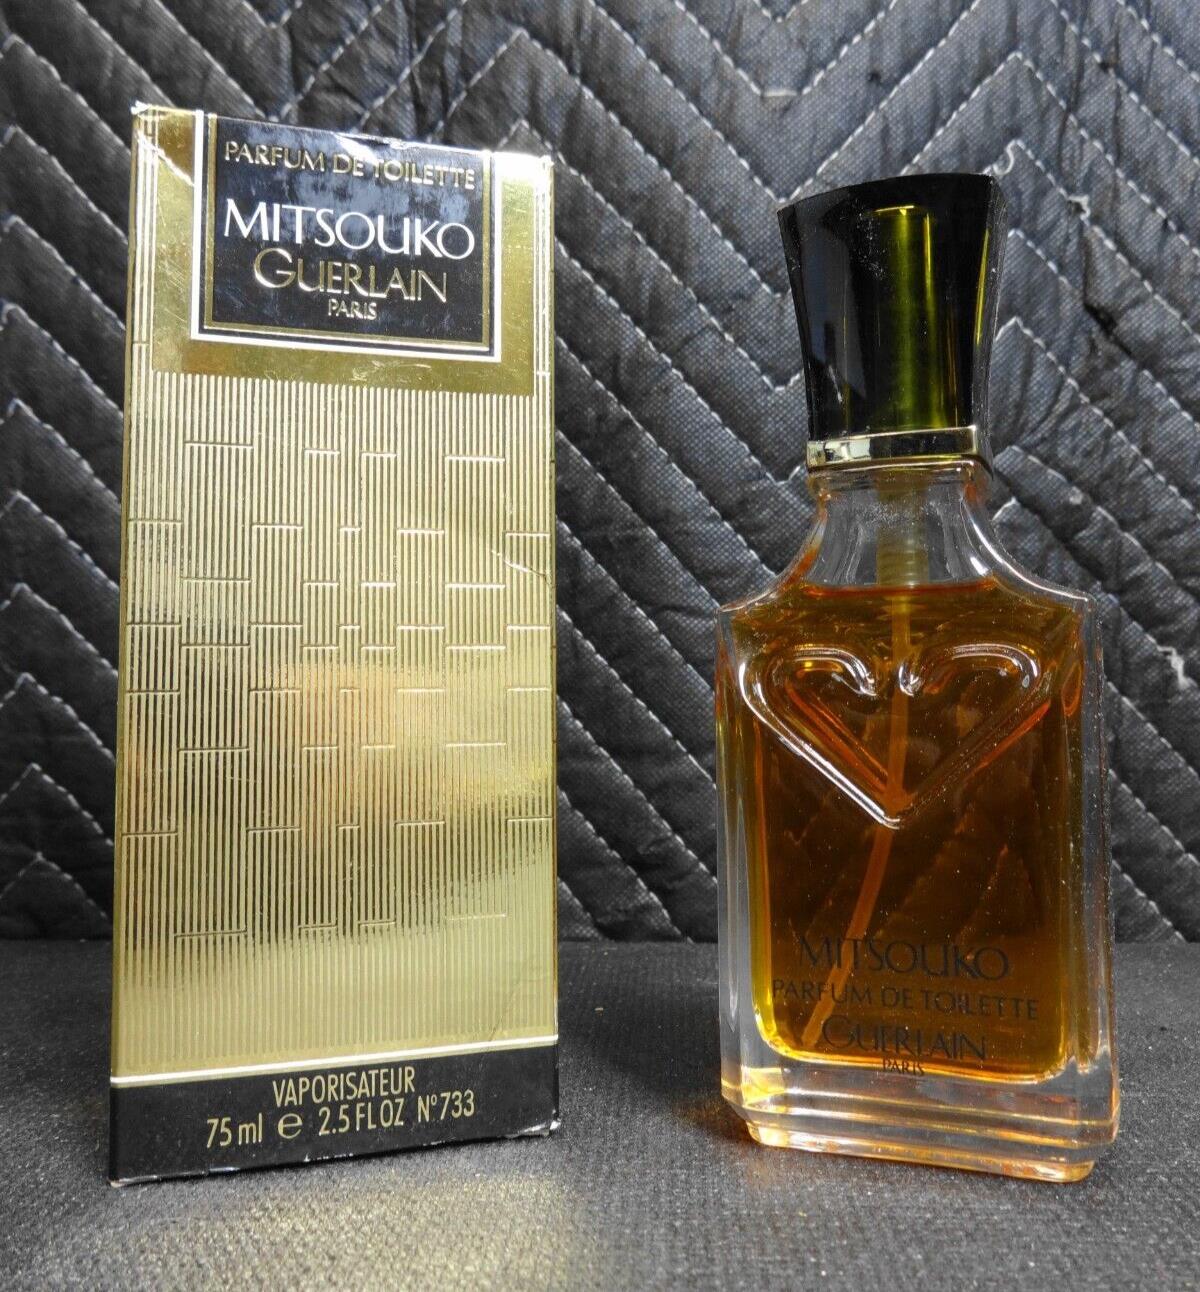 1983 GUERLAIN PARIS MITSOUKO Parfum De Toilette 75 ml Spray - Vintage Formula